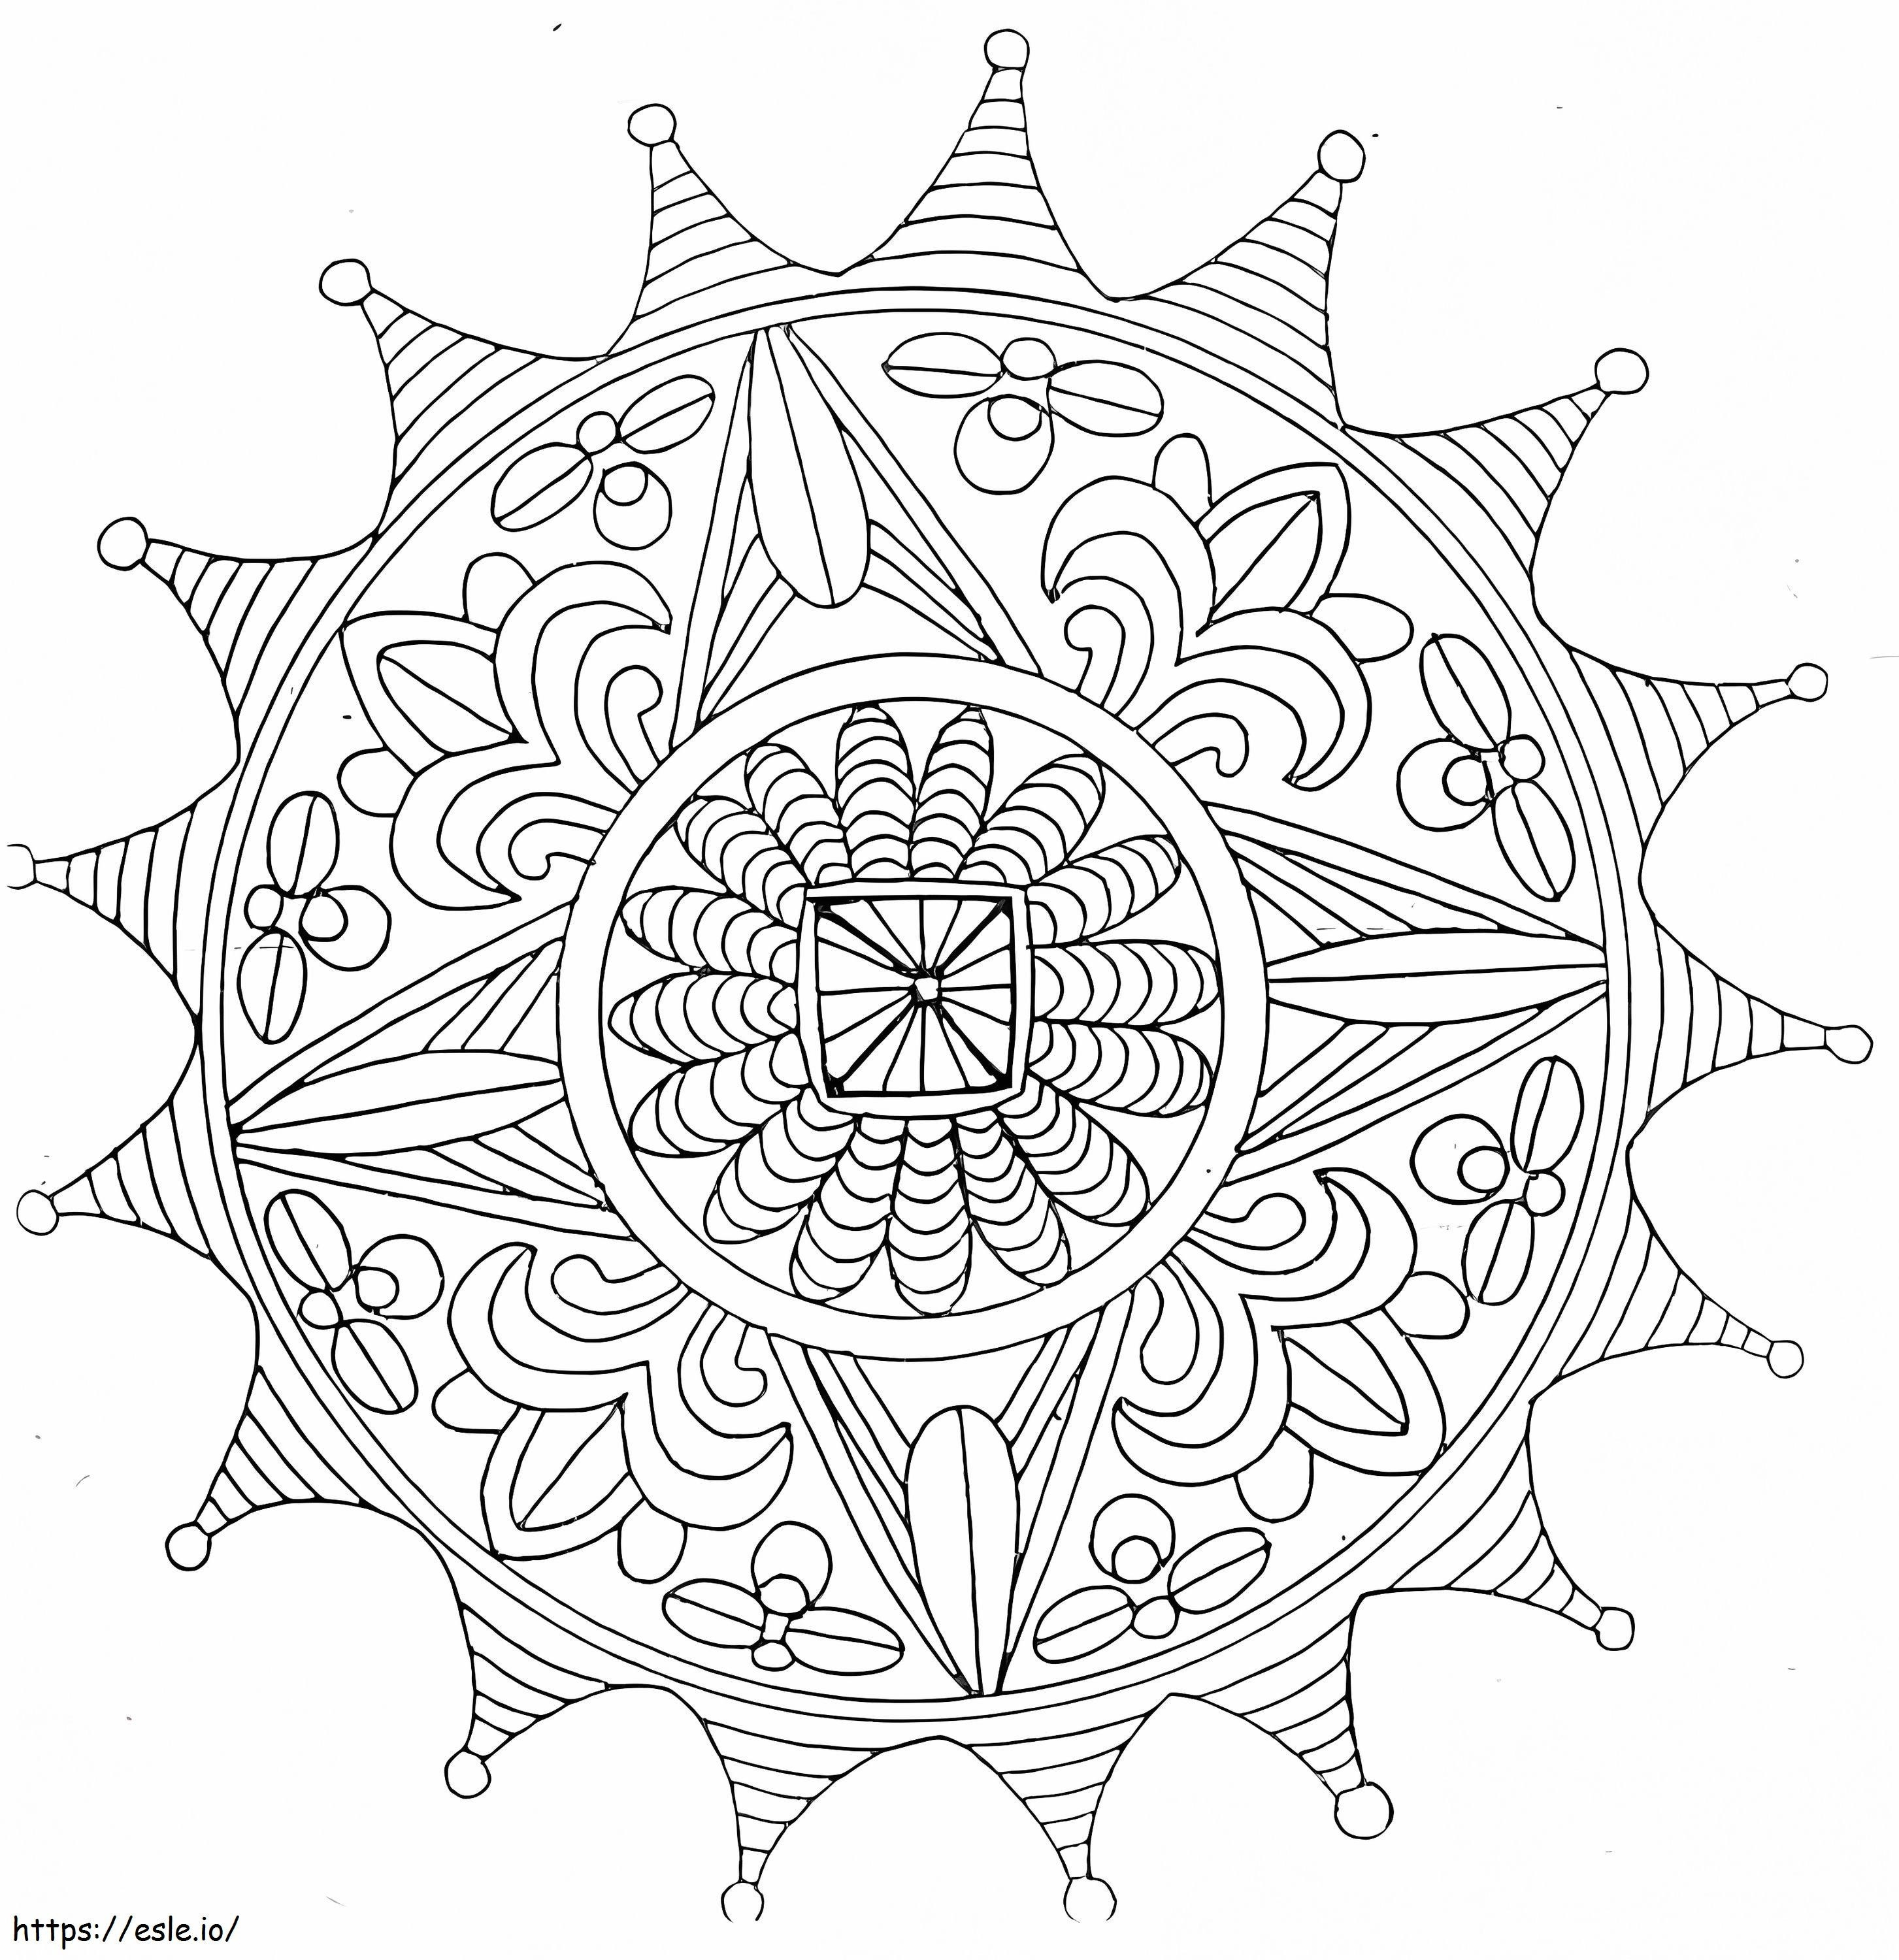 Abstract Mandala 2 coloring page